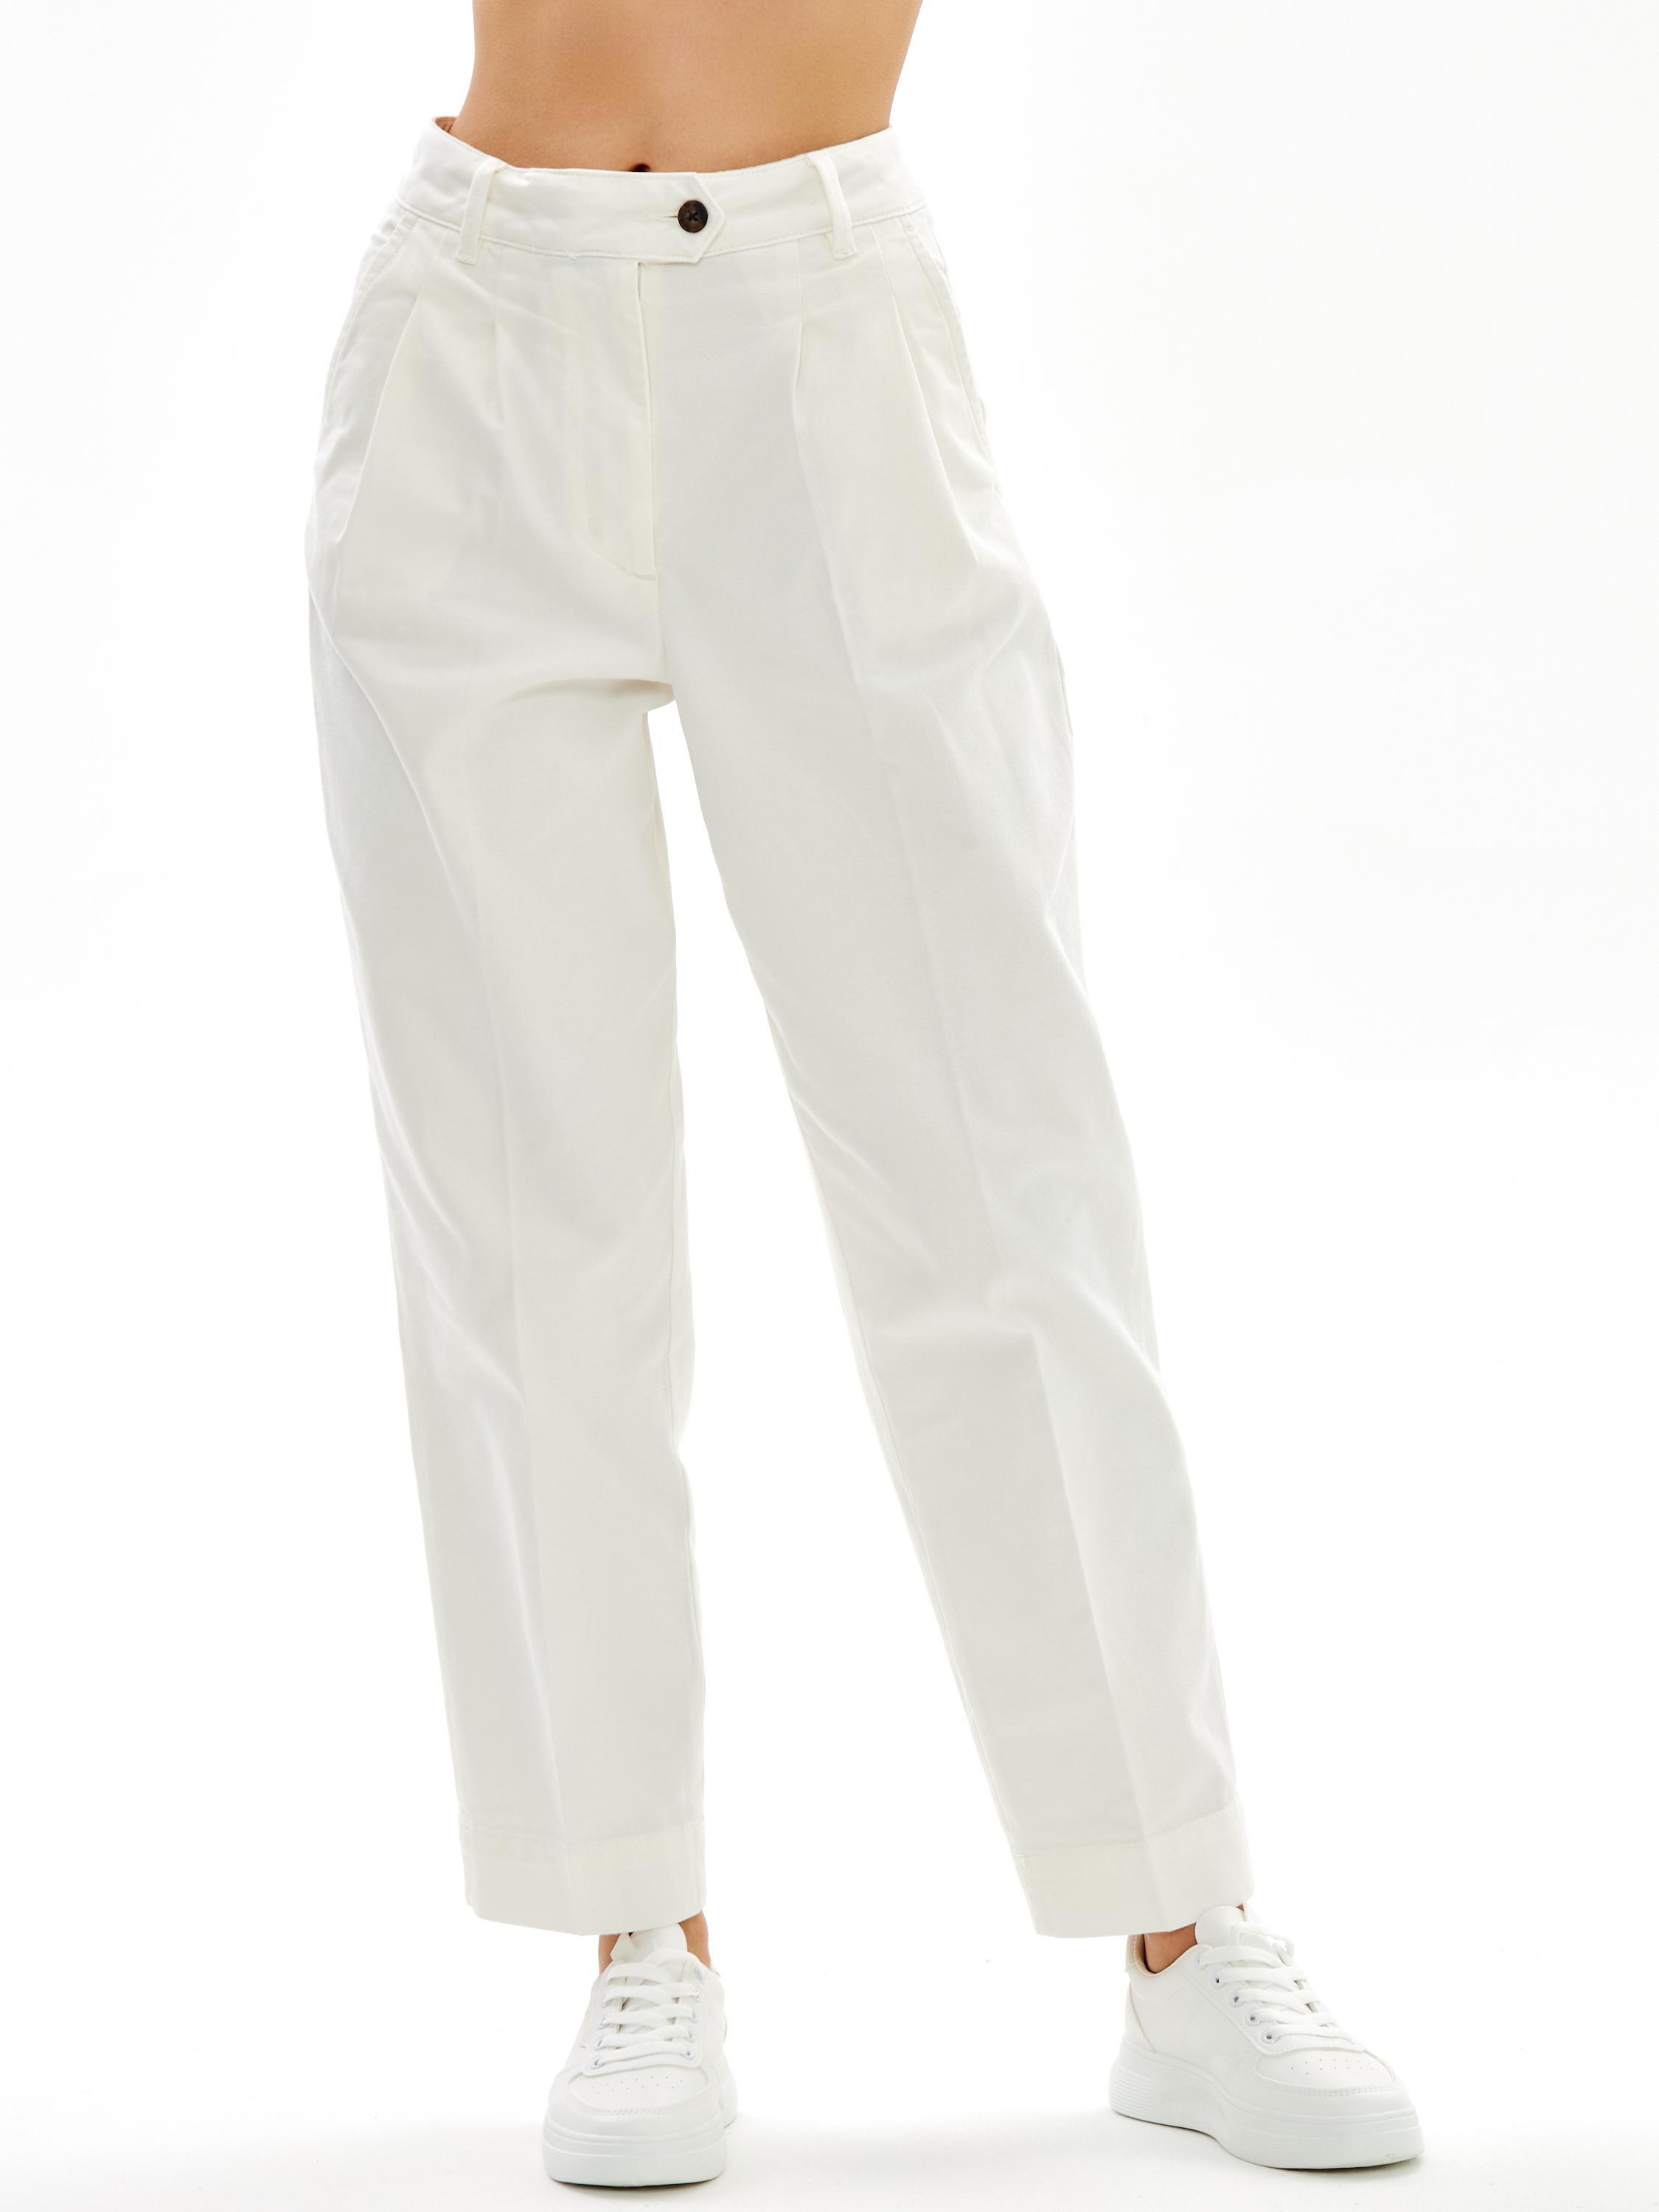 Женские брюки чинос Gant, белые, цвет белый, размер 34 - фото 3